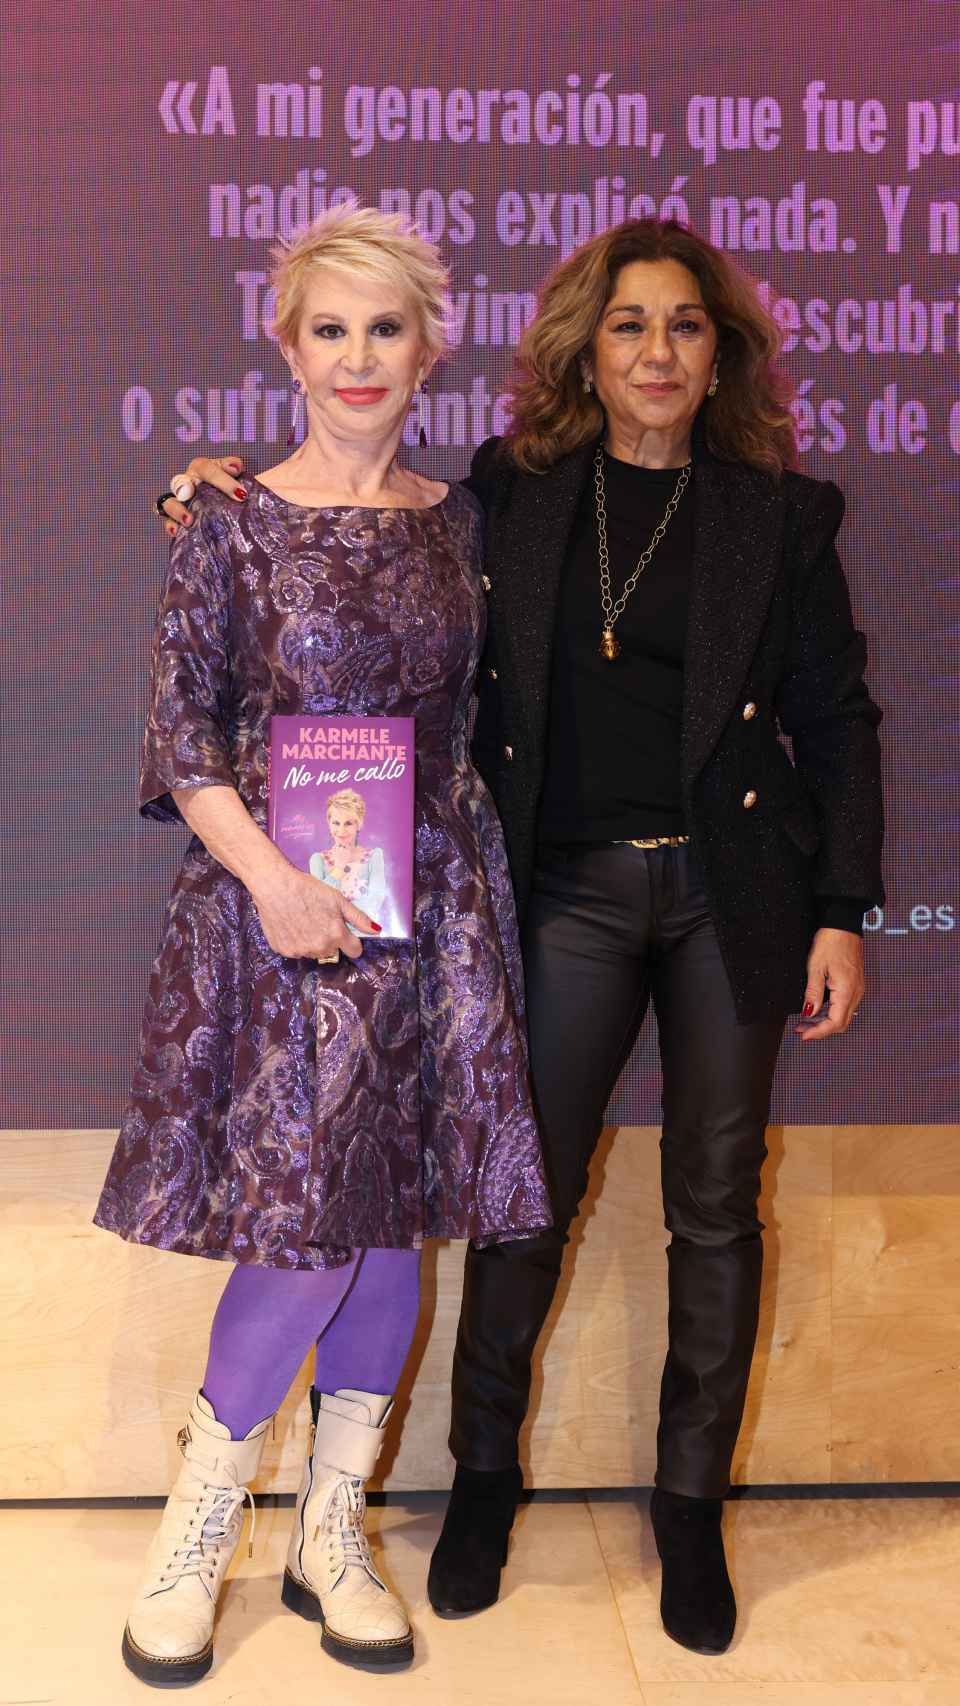 Karmele Marchante junto a Lolita en la presentación de su libro.